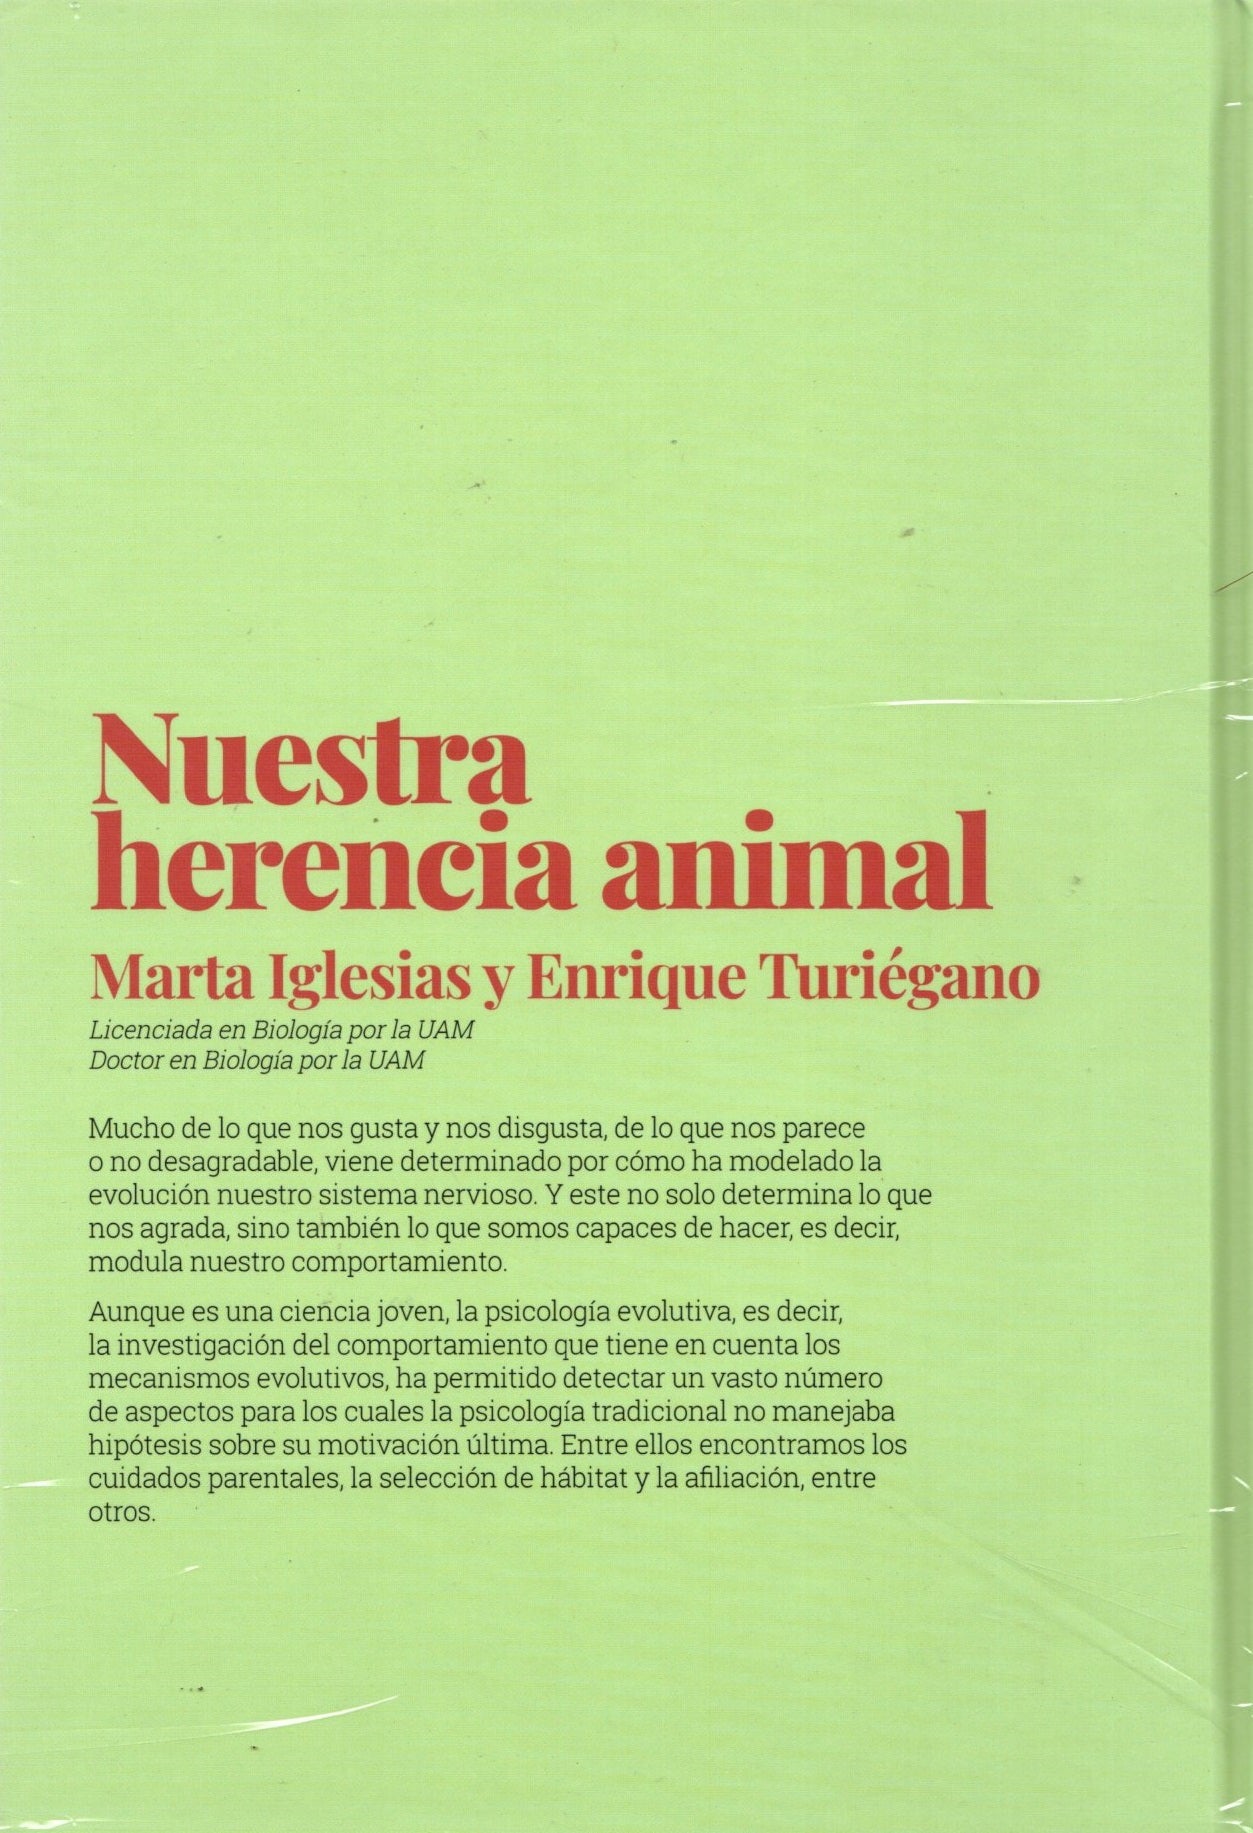 Libro Marta Iglesias y Enrique Turiégano - Nuestra herencia animal